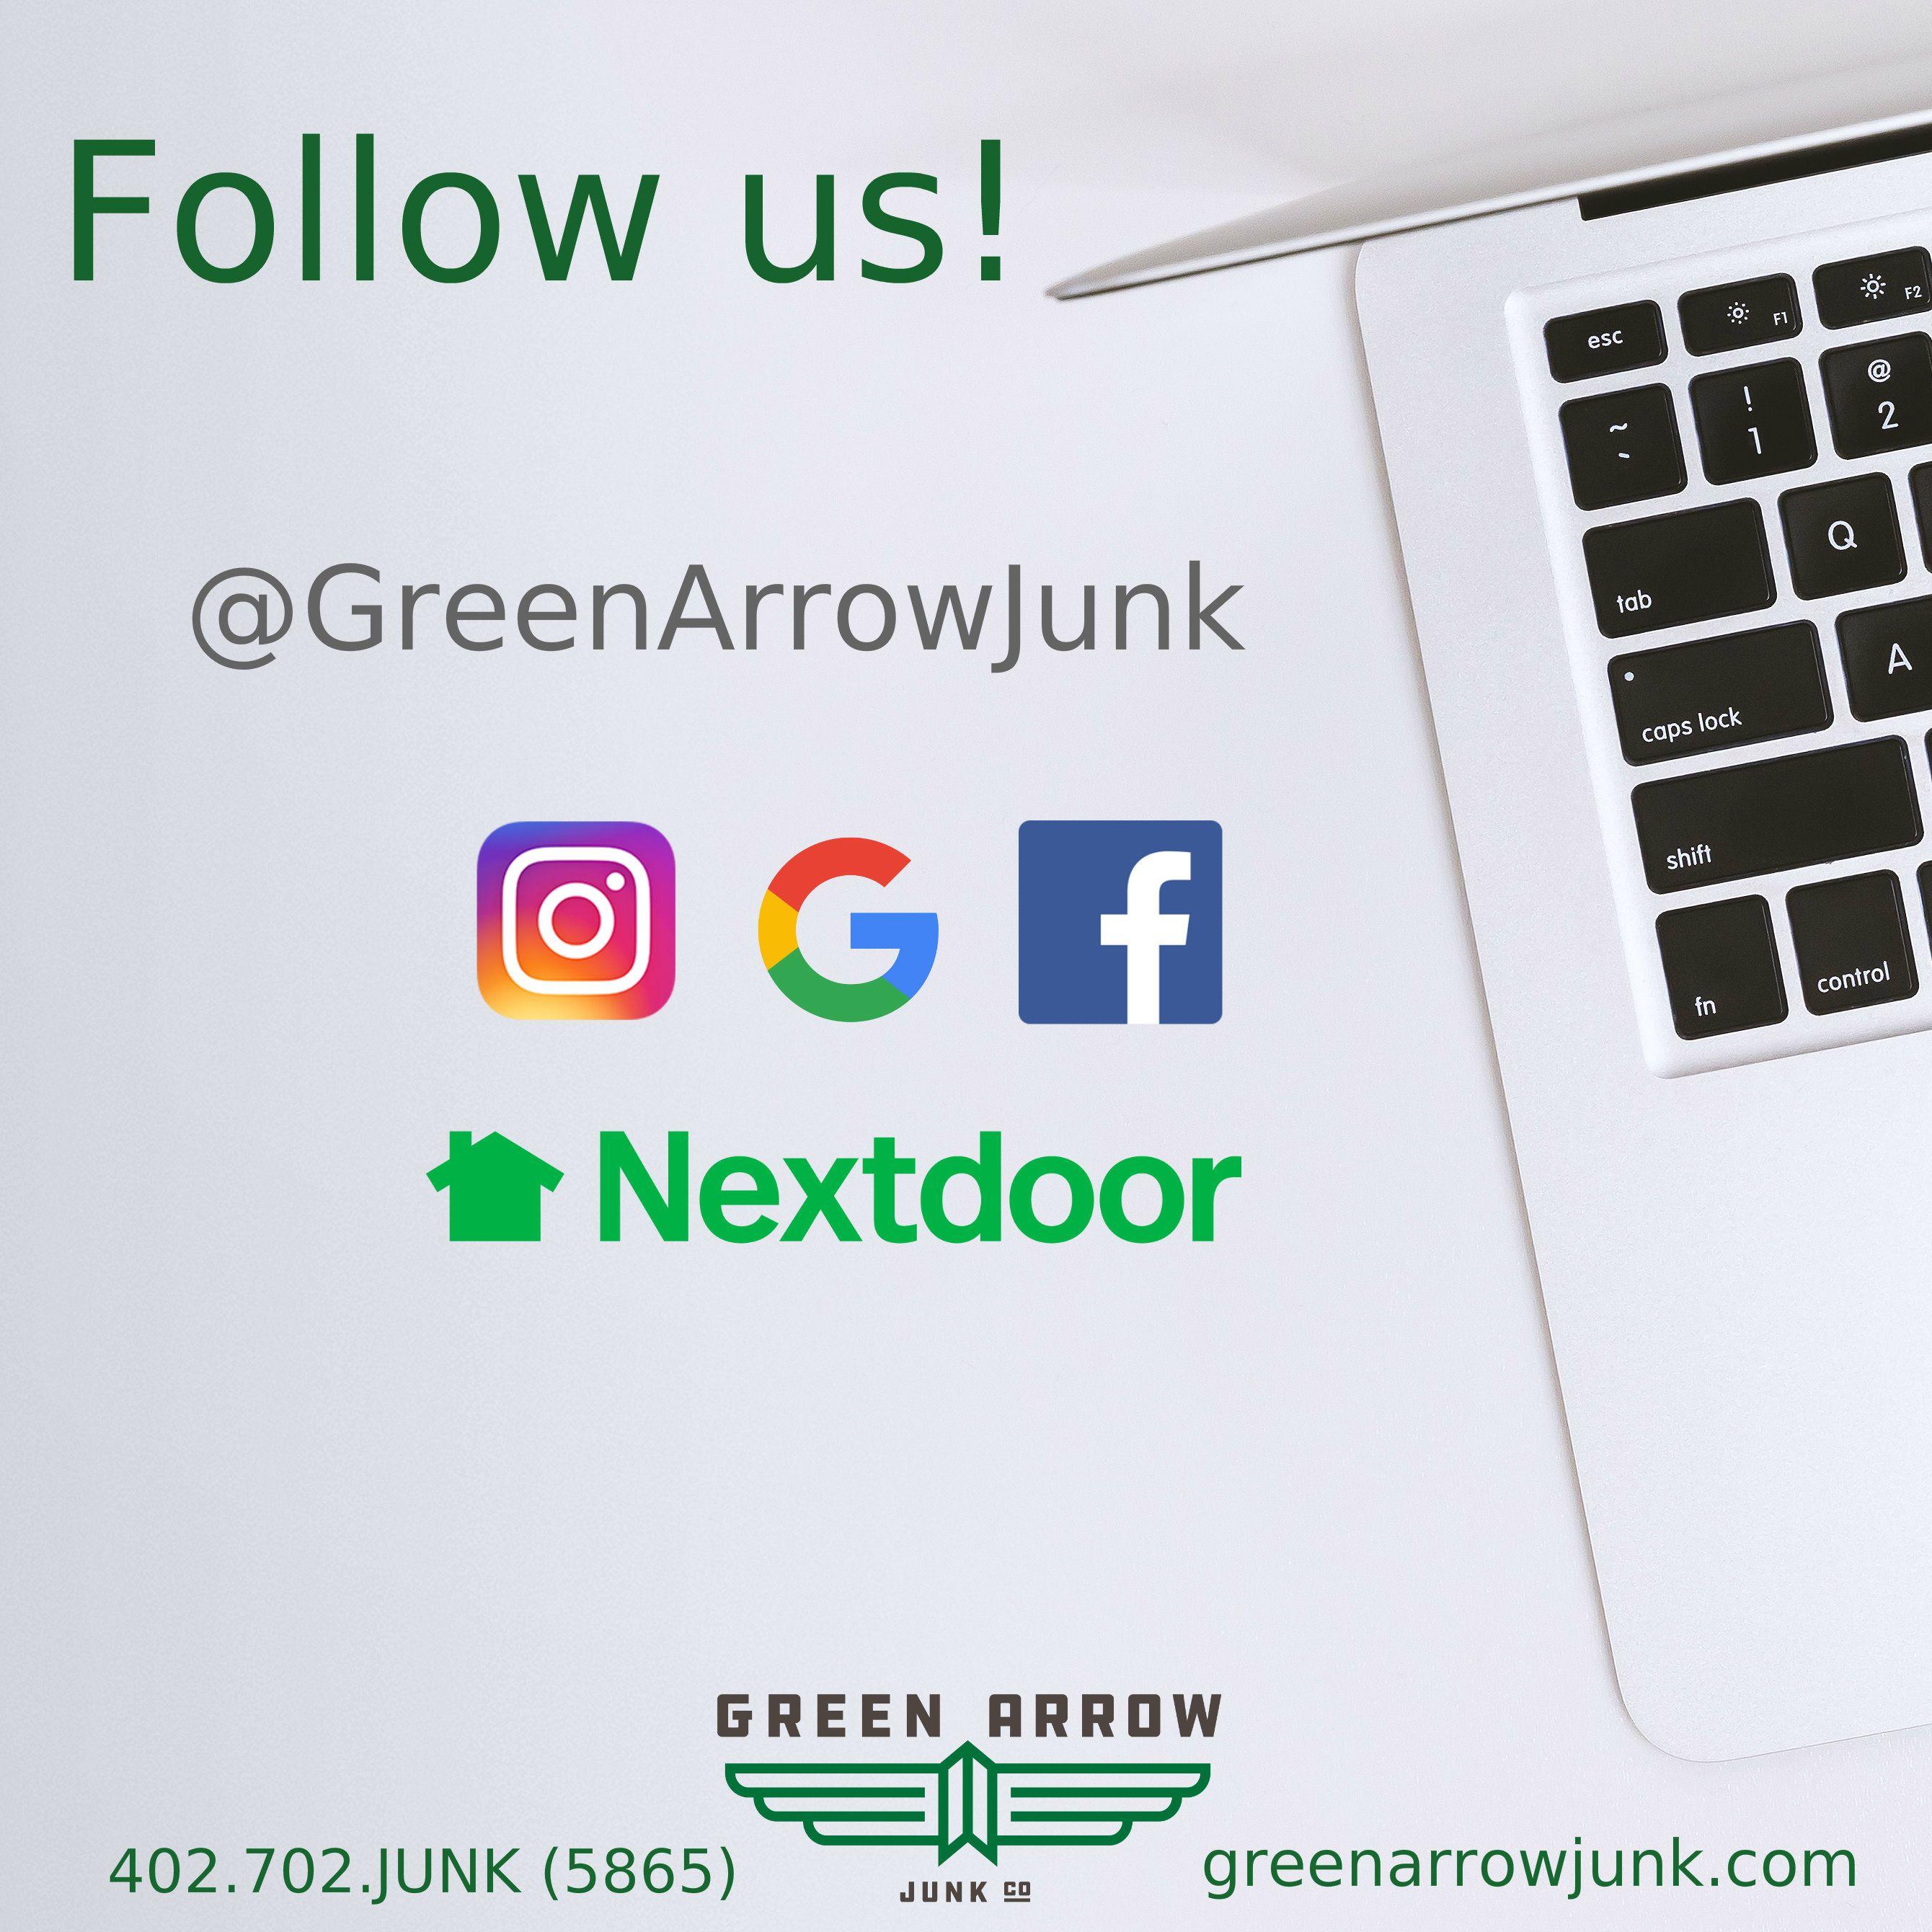 Green Arrow Company Logo - Green Arrow Junk Company In Omaha, Nebraska. We're Your Full Service